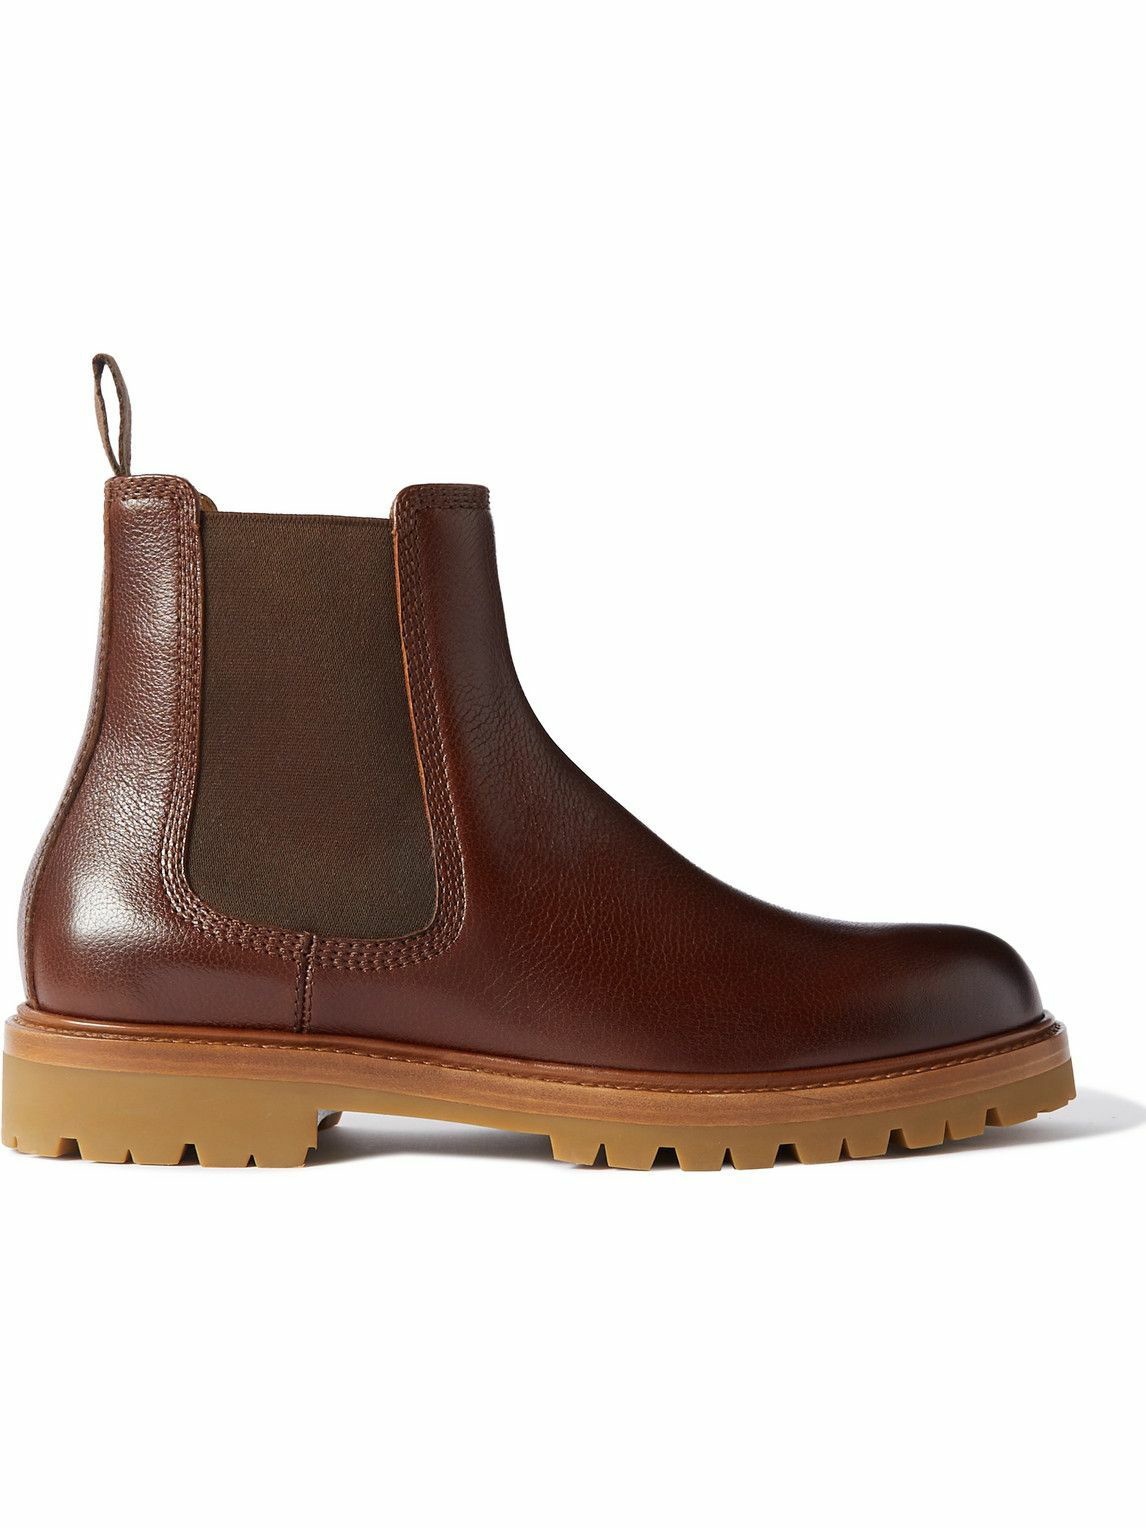 Brunello Cucinelli - Leather Chelsea Boots - Brown Brunello Cucinelli